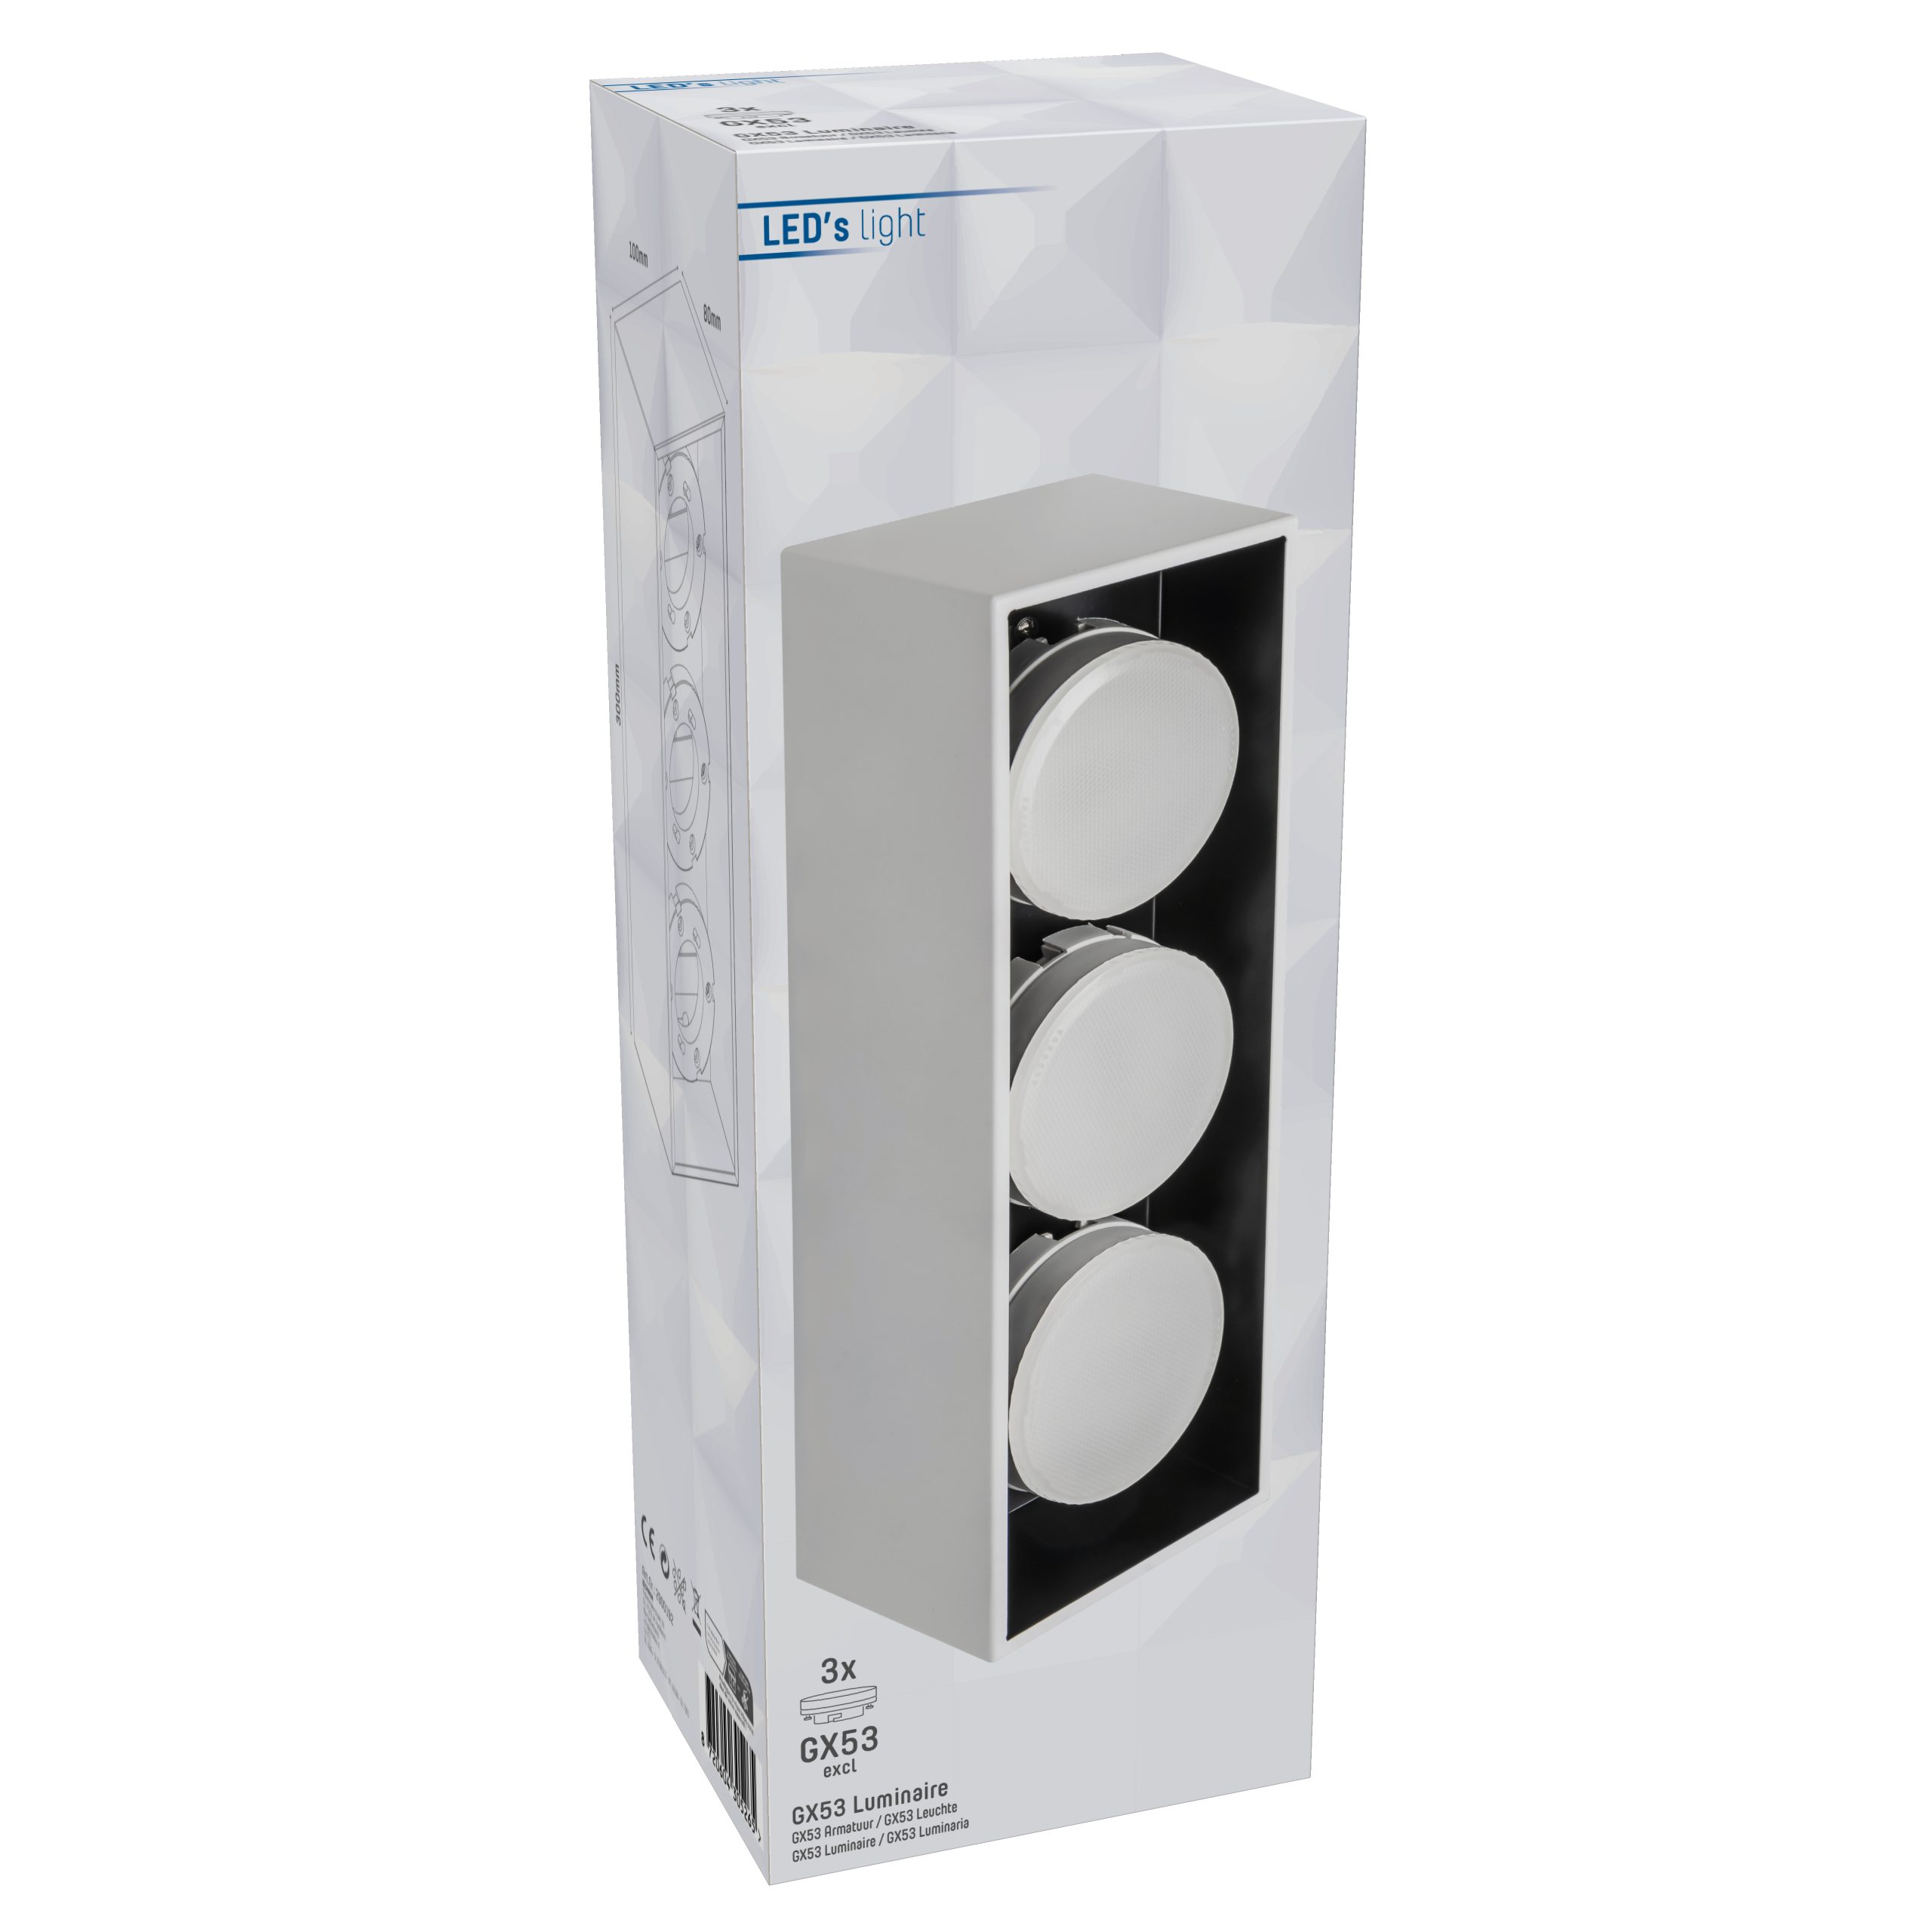 2900192 LED's bis 12W light LED, weiß Deckenleuchte 3x GX53 Deckenleuchte, LED